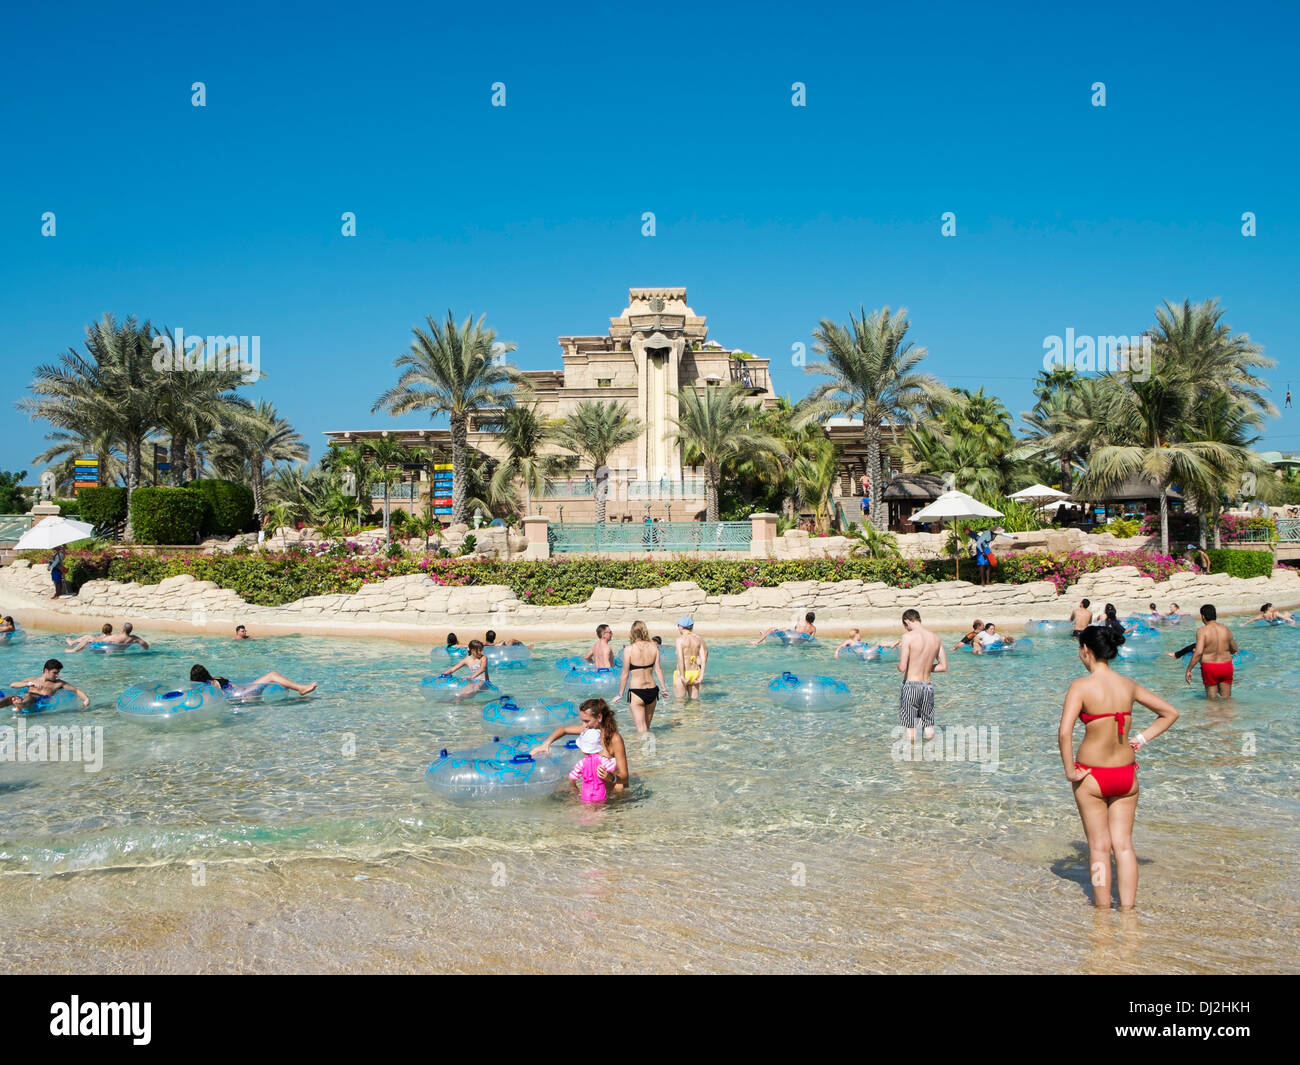 Aquaventure Wasserpark im Hotel Atlantis auf The Palm Island in Dubai Vereinigte Arabische Emirate Stockfoto